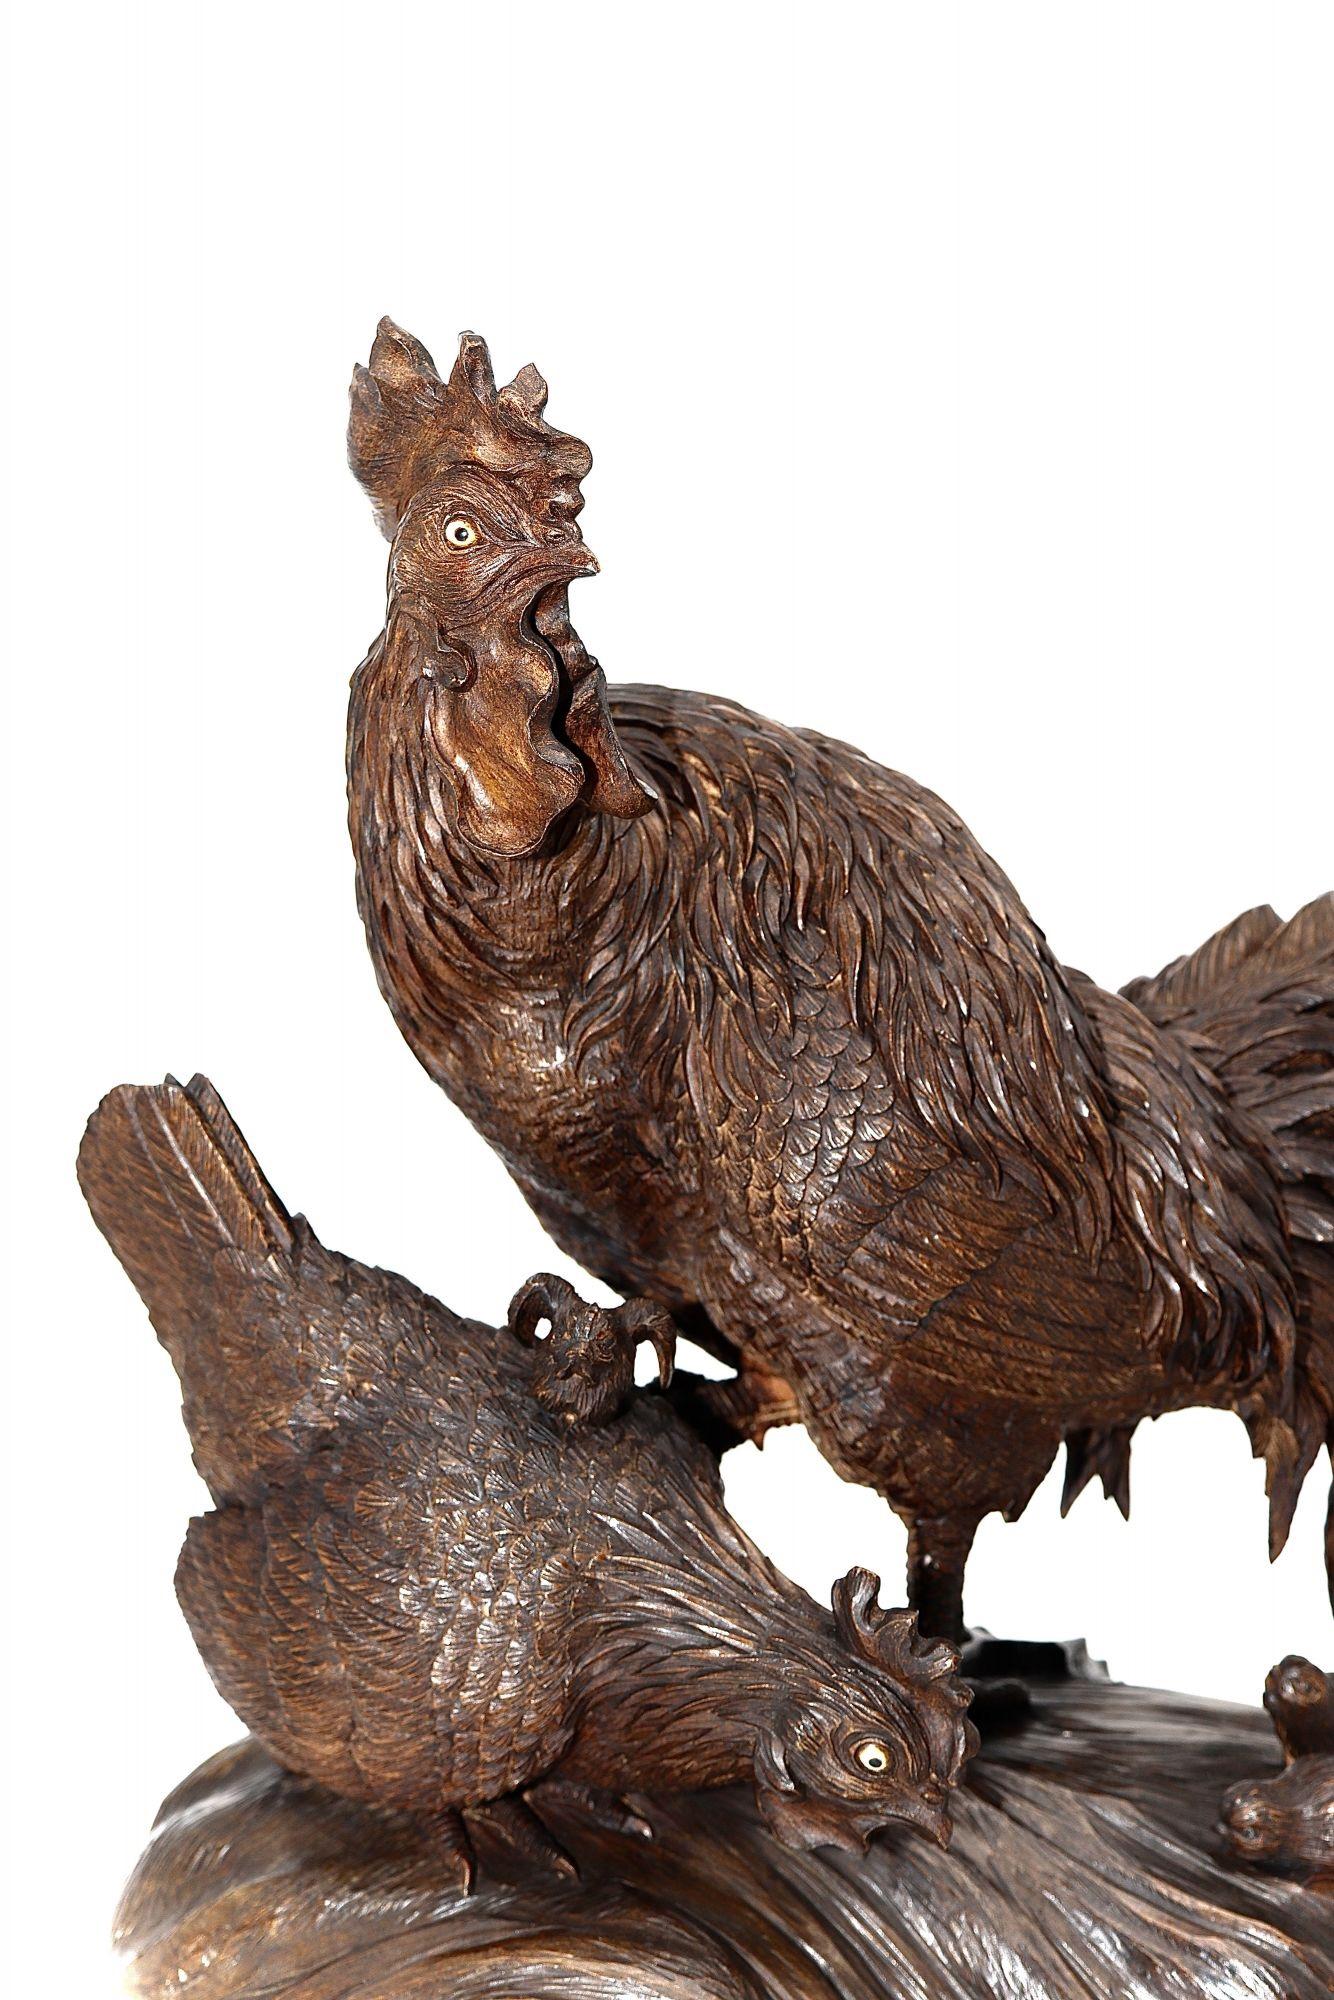 Un grand coq finement signé et sculpté au Japon, avec un impressionnant panache de plumes de queue, se tenant au-dessus de sa famille composée d'une poule et de poussins qui fouillent le sol à la recherche de nourriture. Les détails sont finement